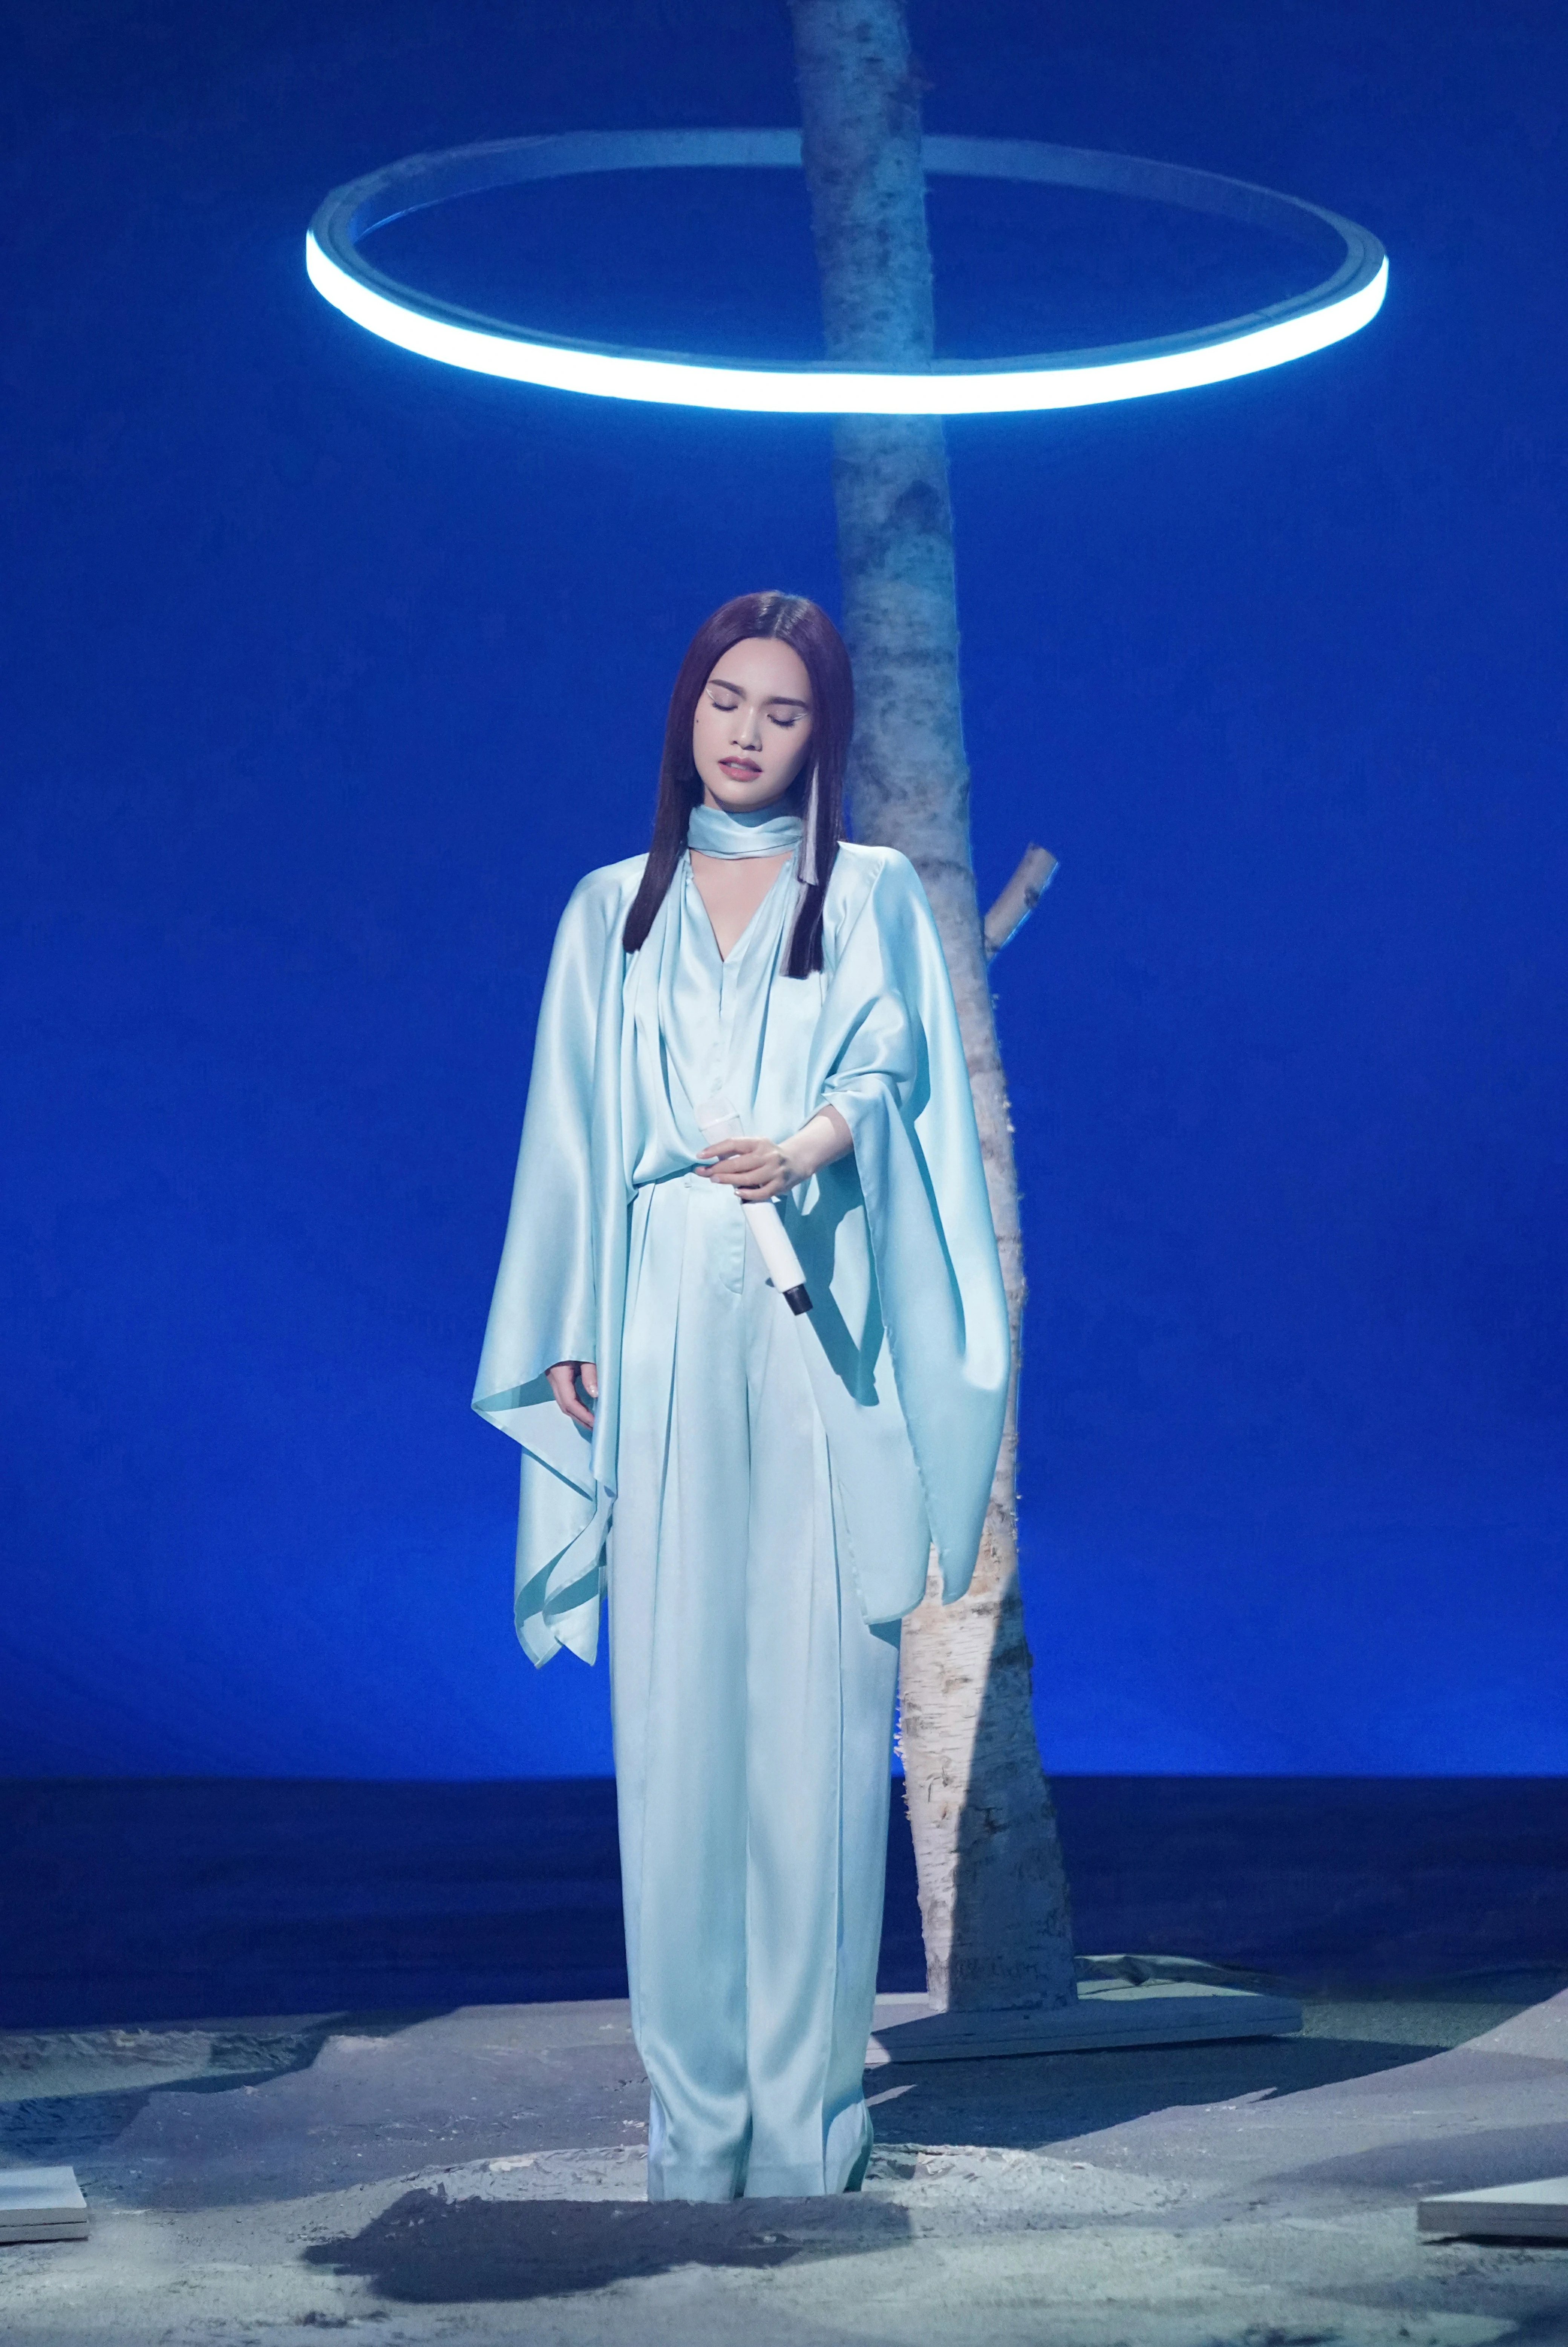 杨丞琳亮相本周《闪光的乐队》 挑染公主切造型带来《天堂》舞台,23